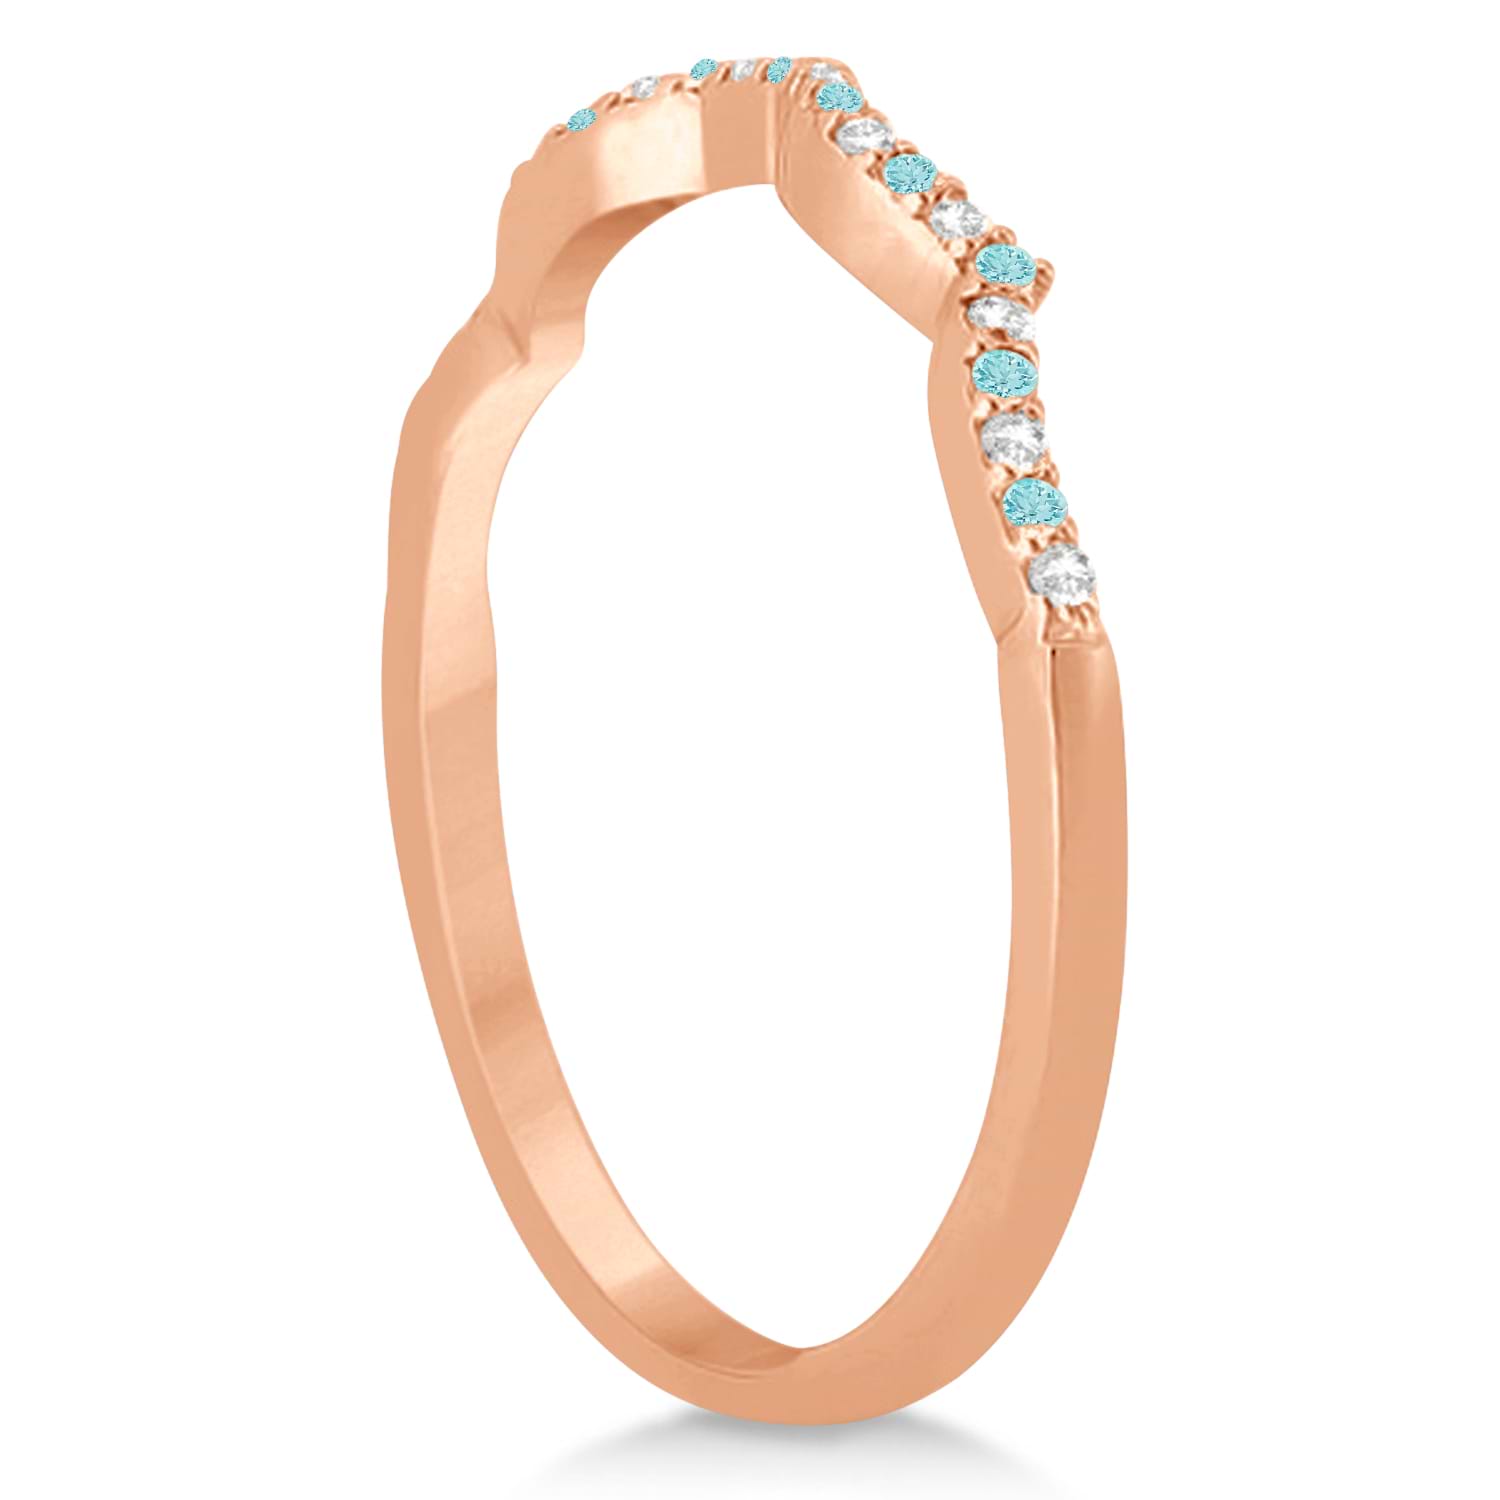 Diamond & Aquamarine Infinity Style Bridal Set 18k Rose Gold 2.24ct